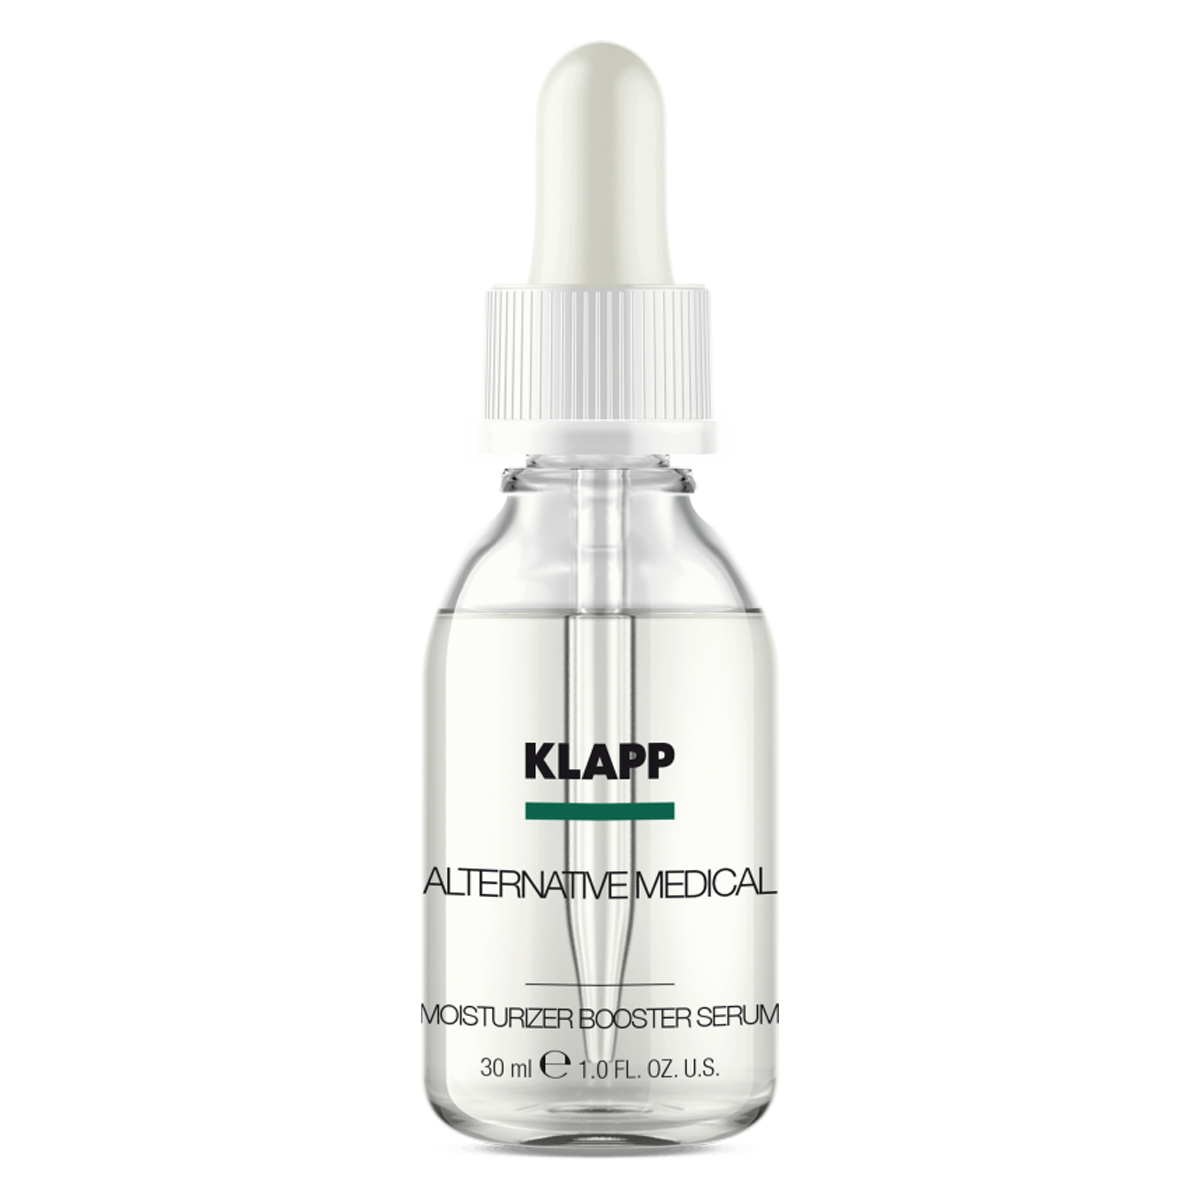 KLAPP Alternative Medical Moisturizer Booster Serum 30 ml